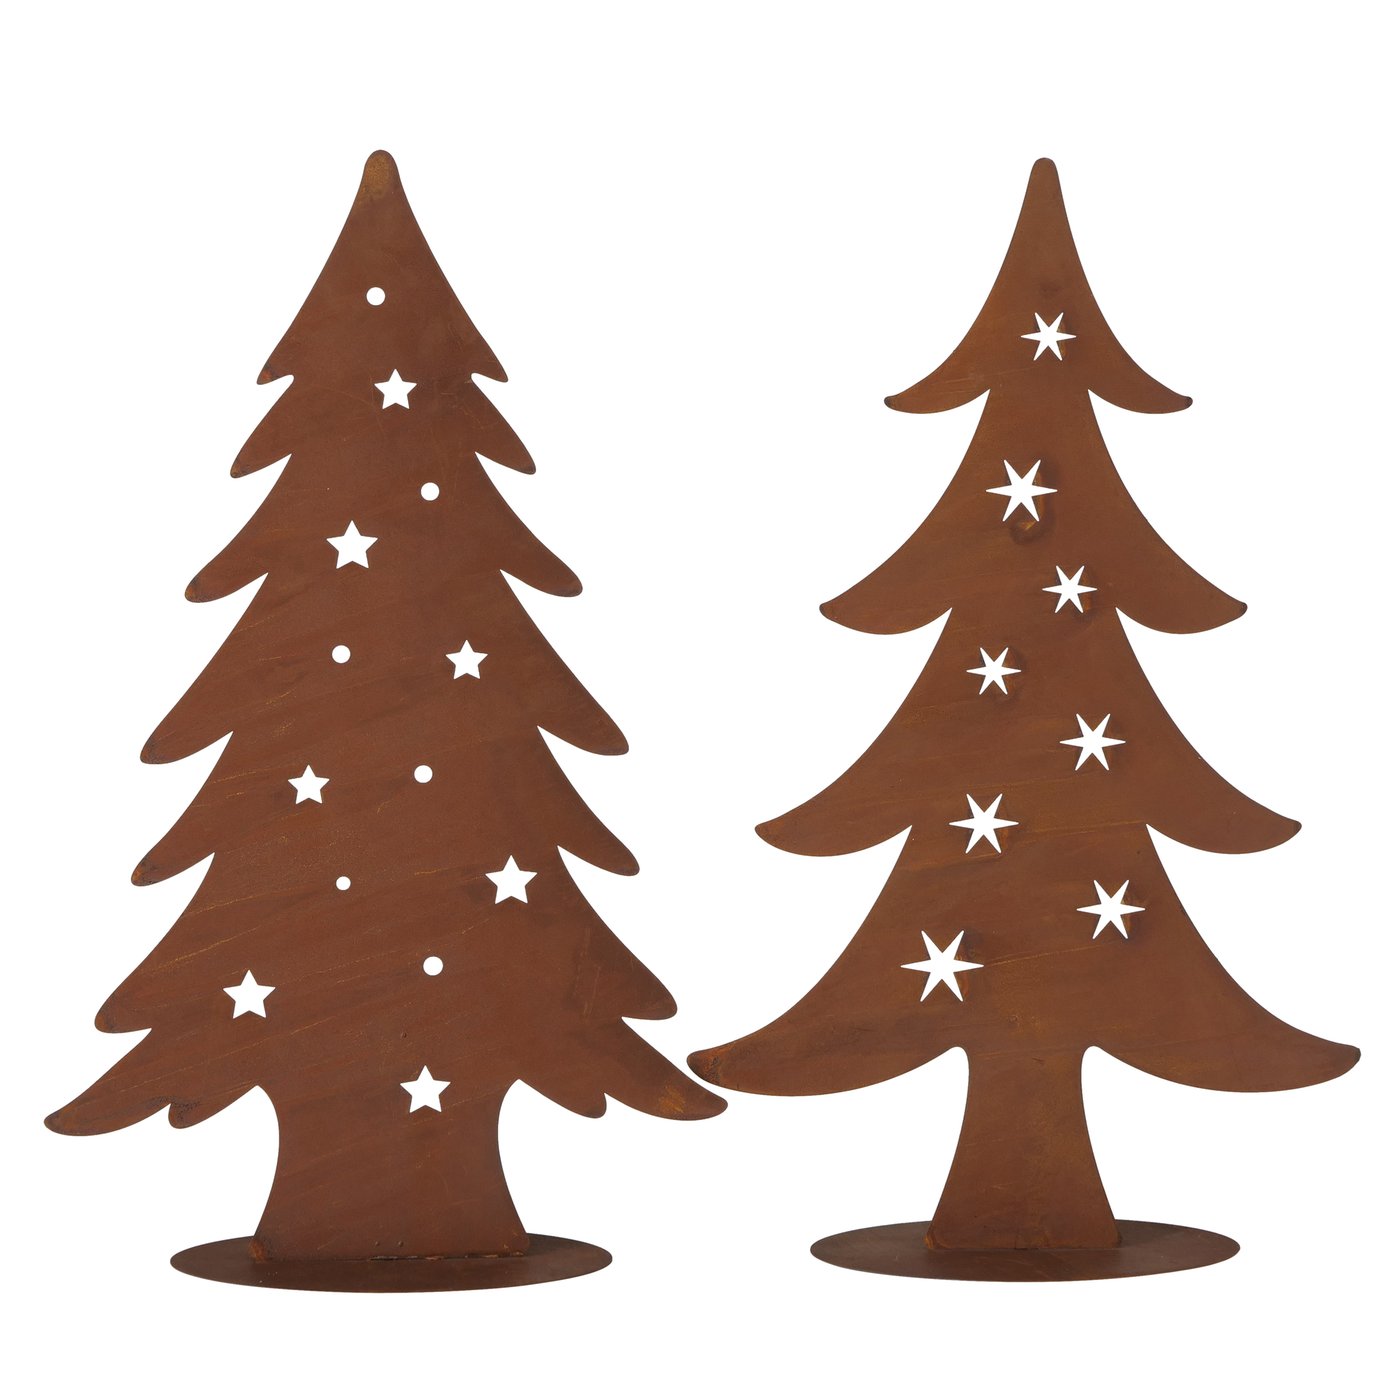 Metall Aufsteller Weihnachtsbaum Tanne Edelrost - H75cm, 2014316, 4020607920767